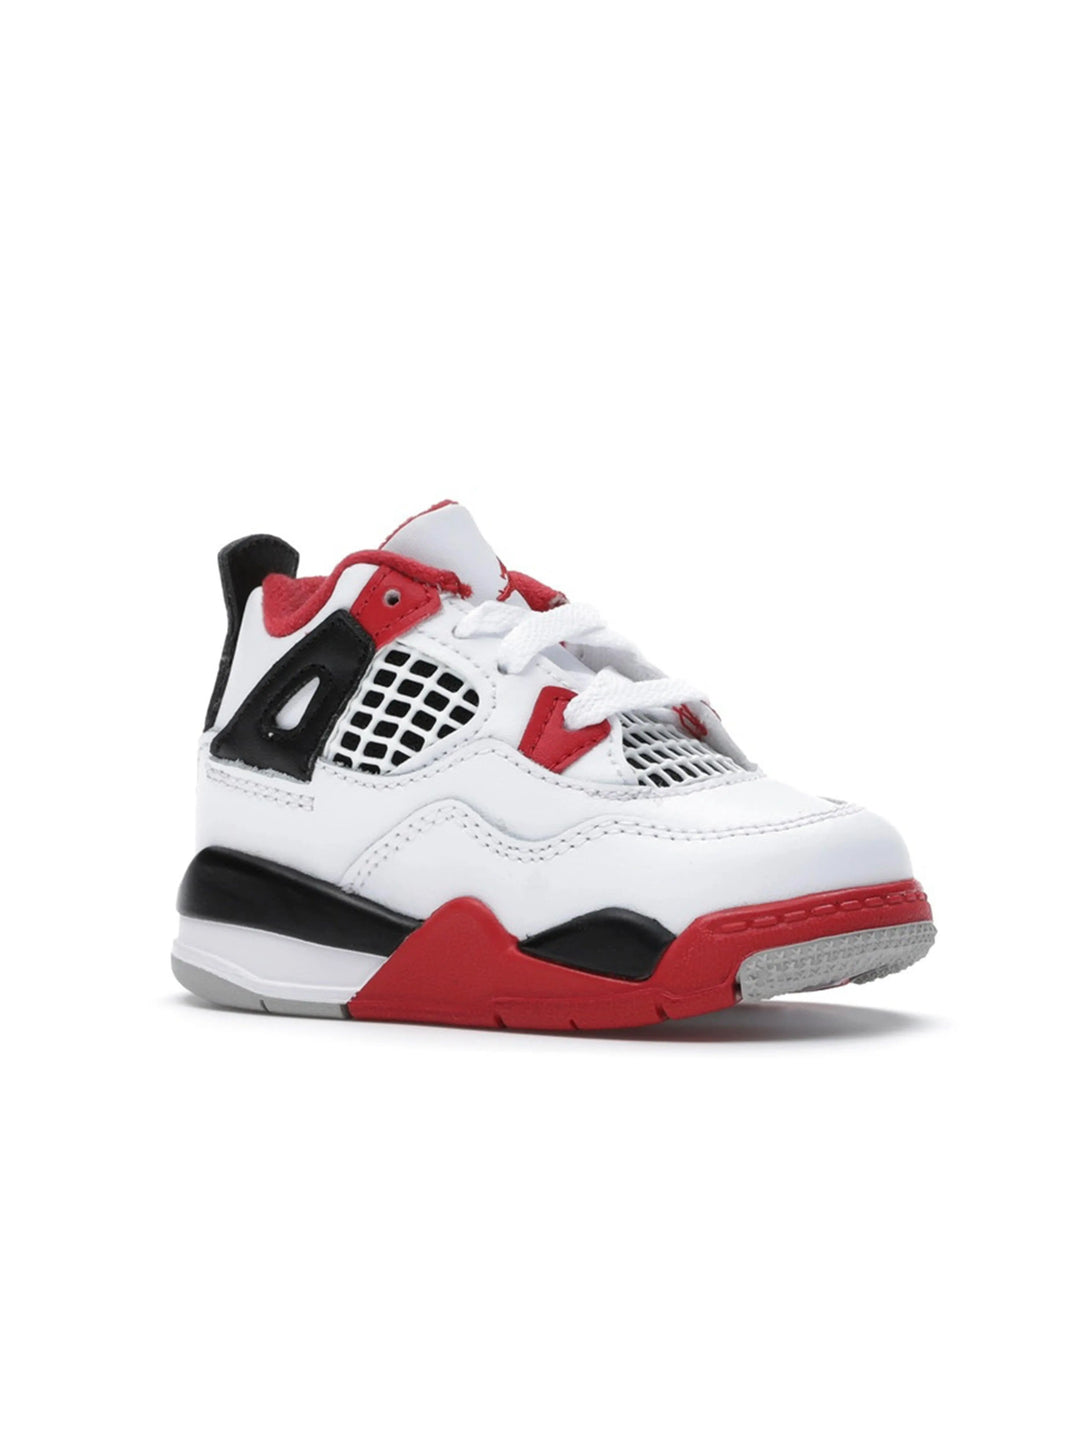 Nike Air Jordan 4 Retro Fire Red [2020] (TD) Prior